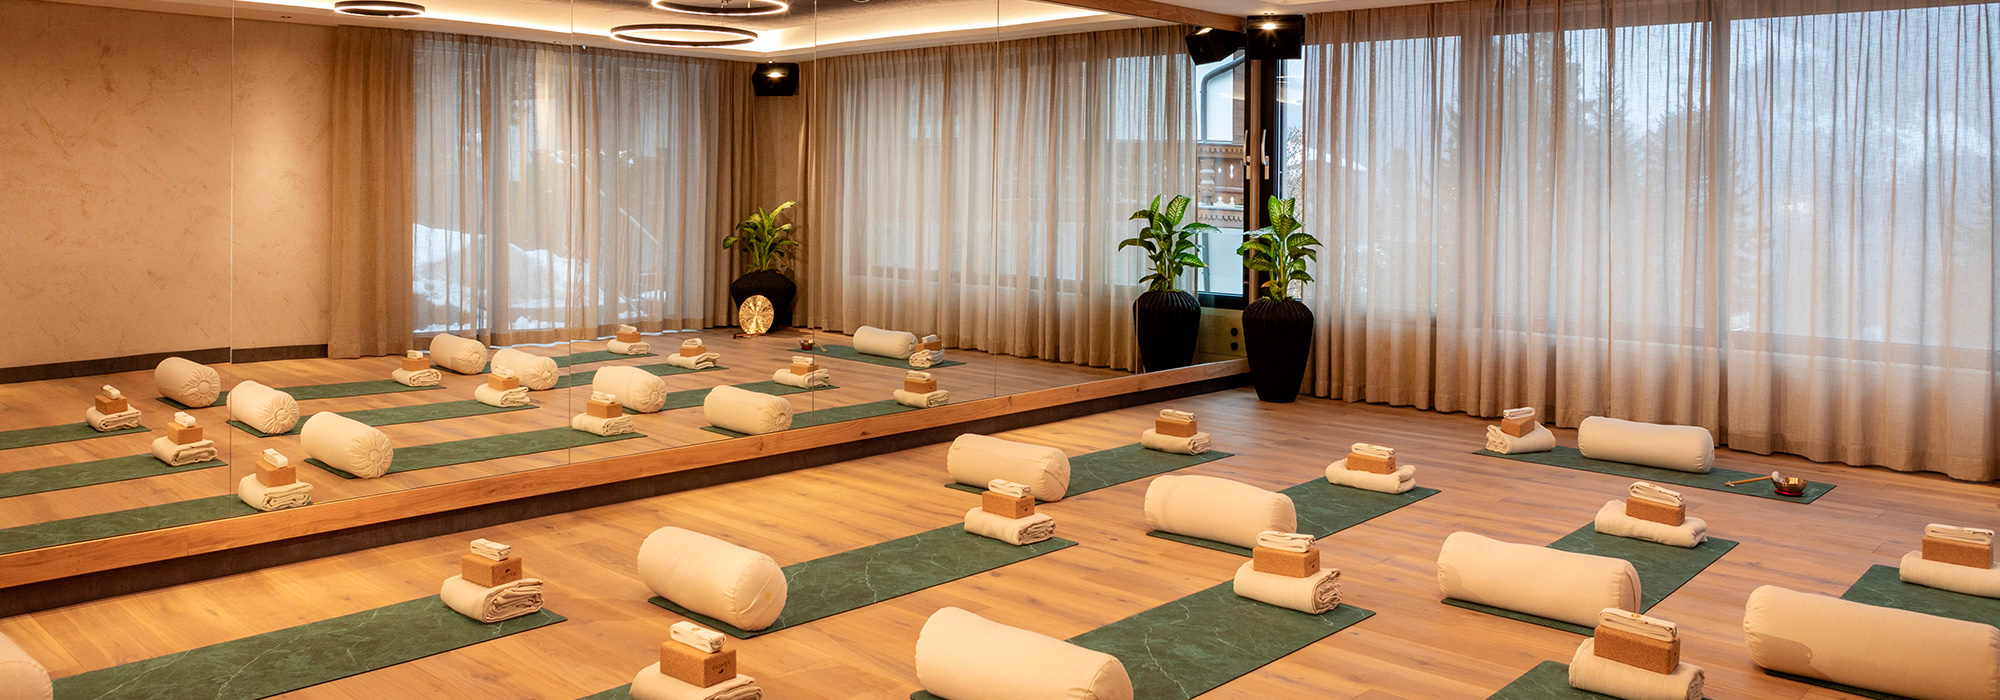 Aktivraum für Yoga im Hotel Alpendorf